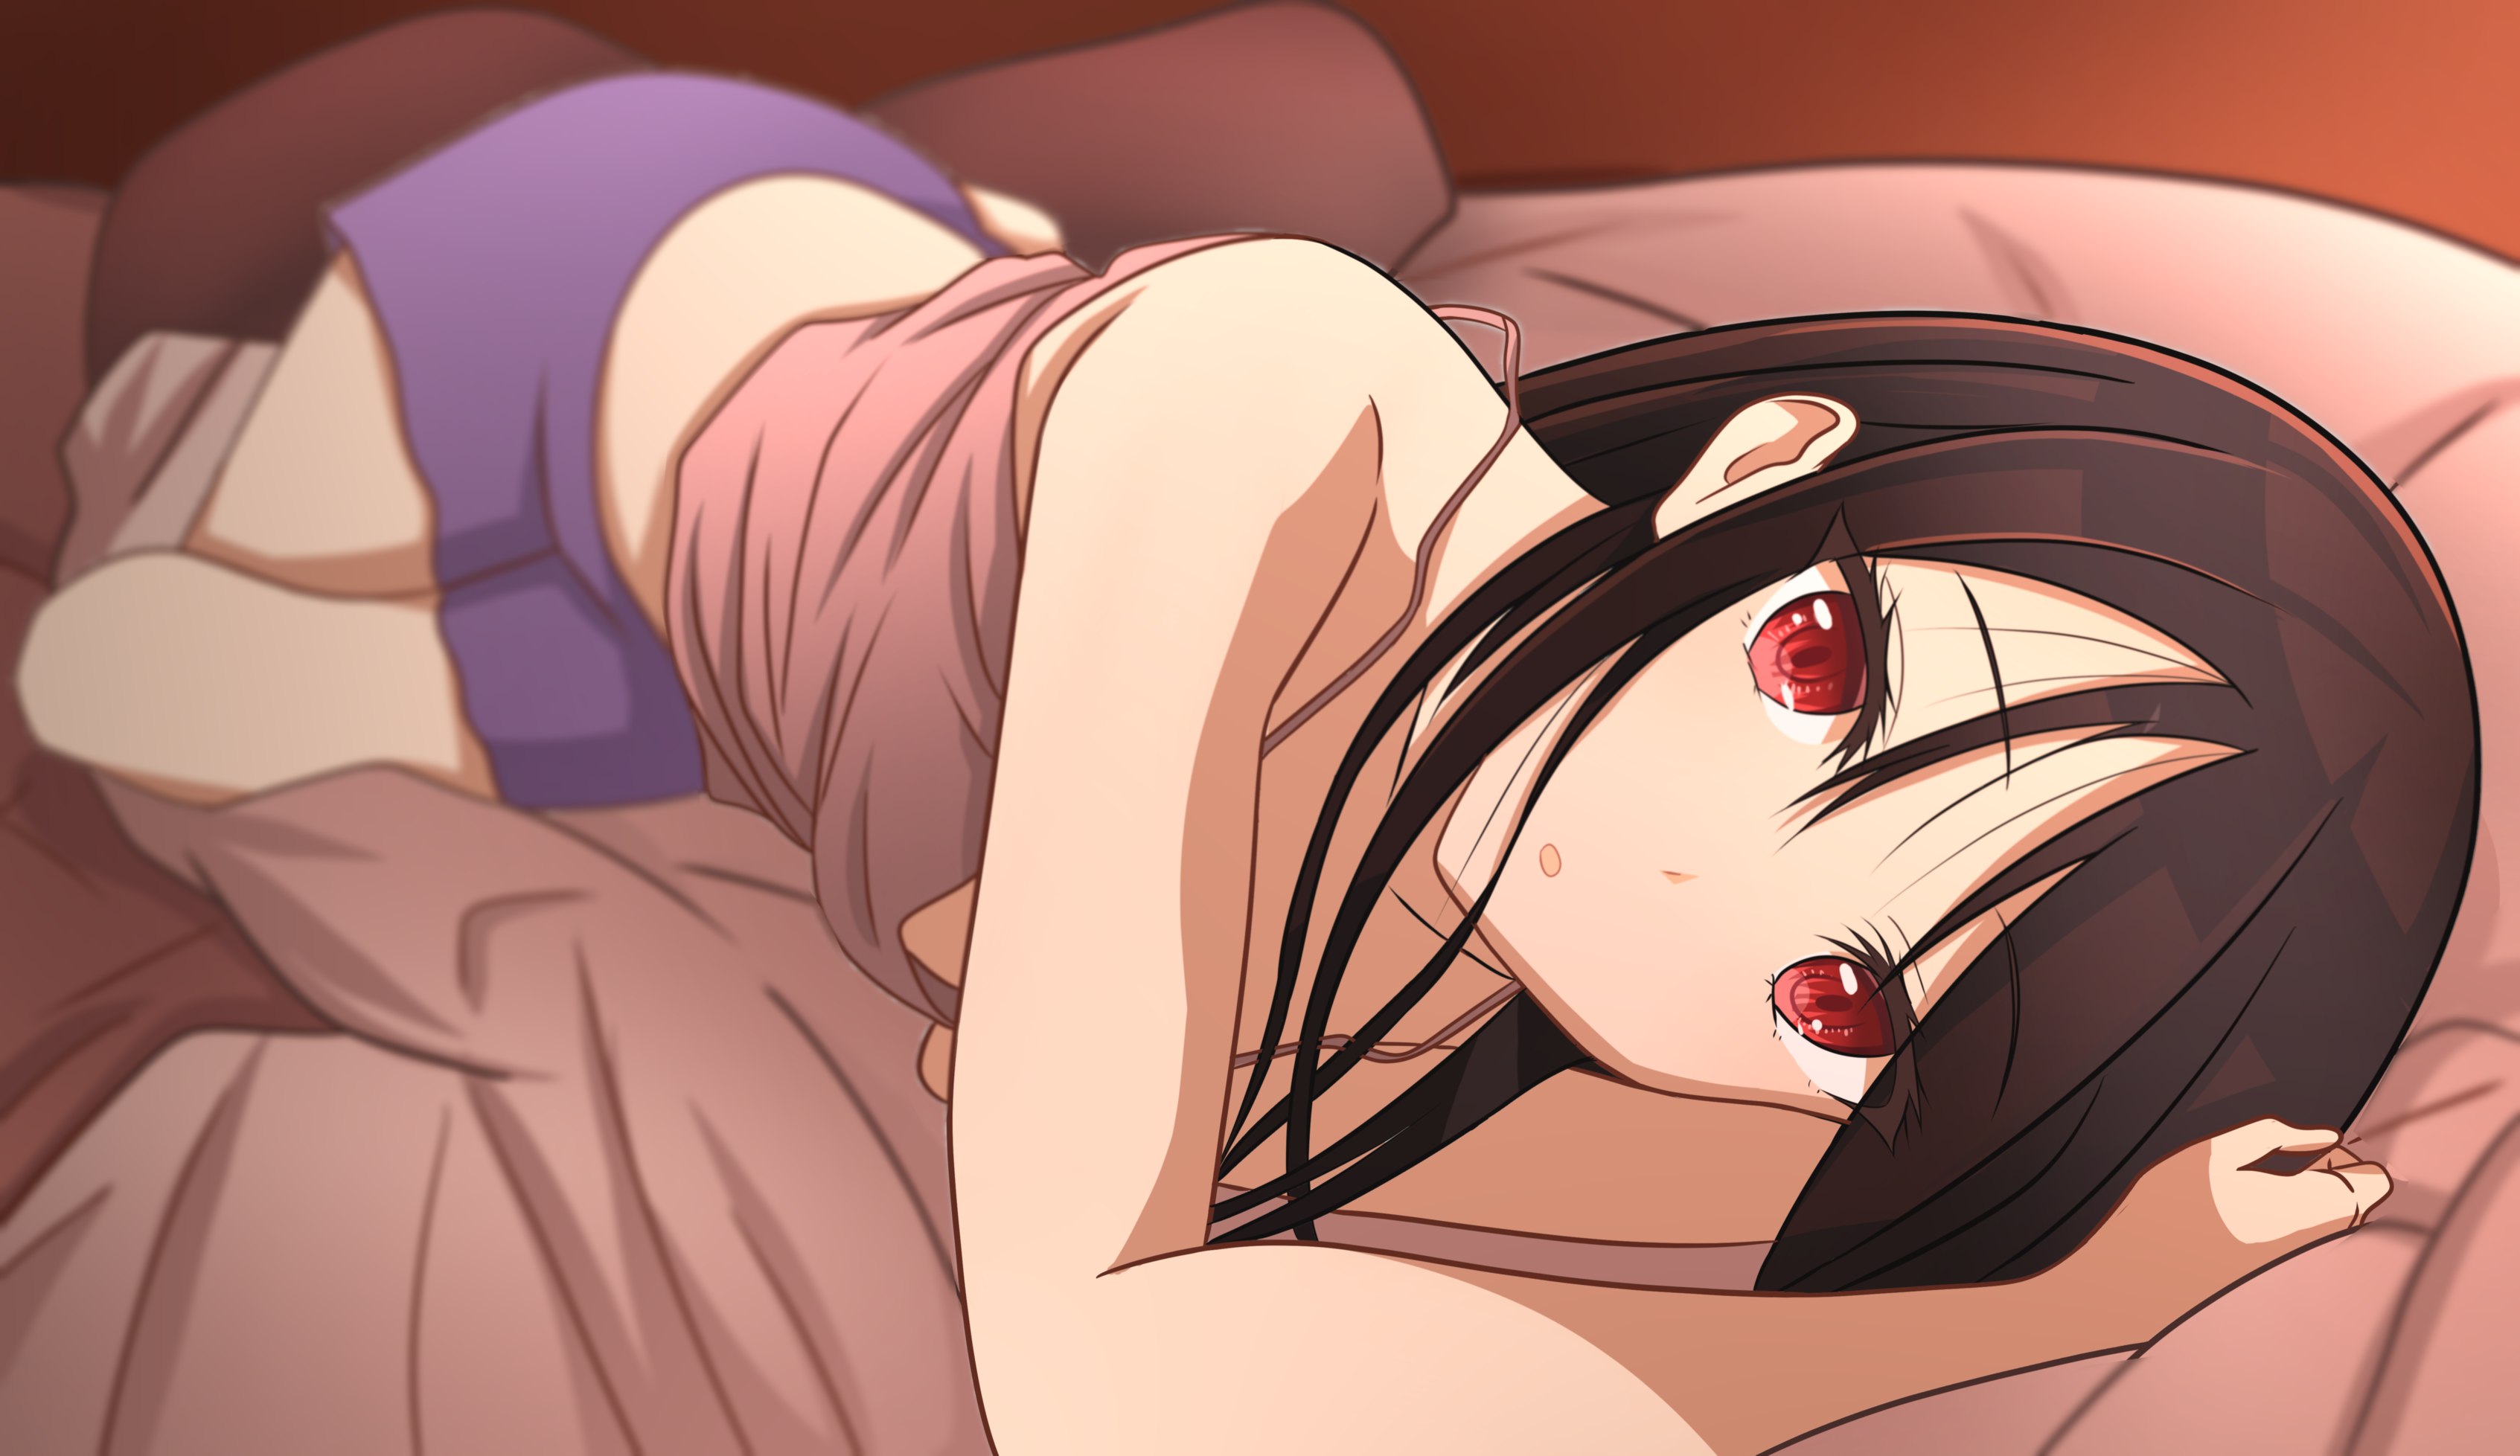 Anime 3386x1957 Kaguya-Sama: Love is War Kaguya Shinomiya red eyes anime anime girls in bed